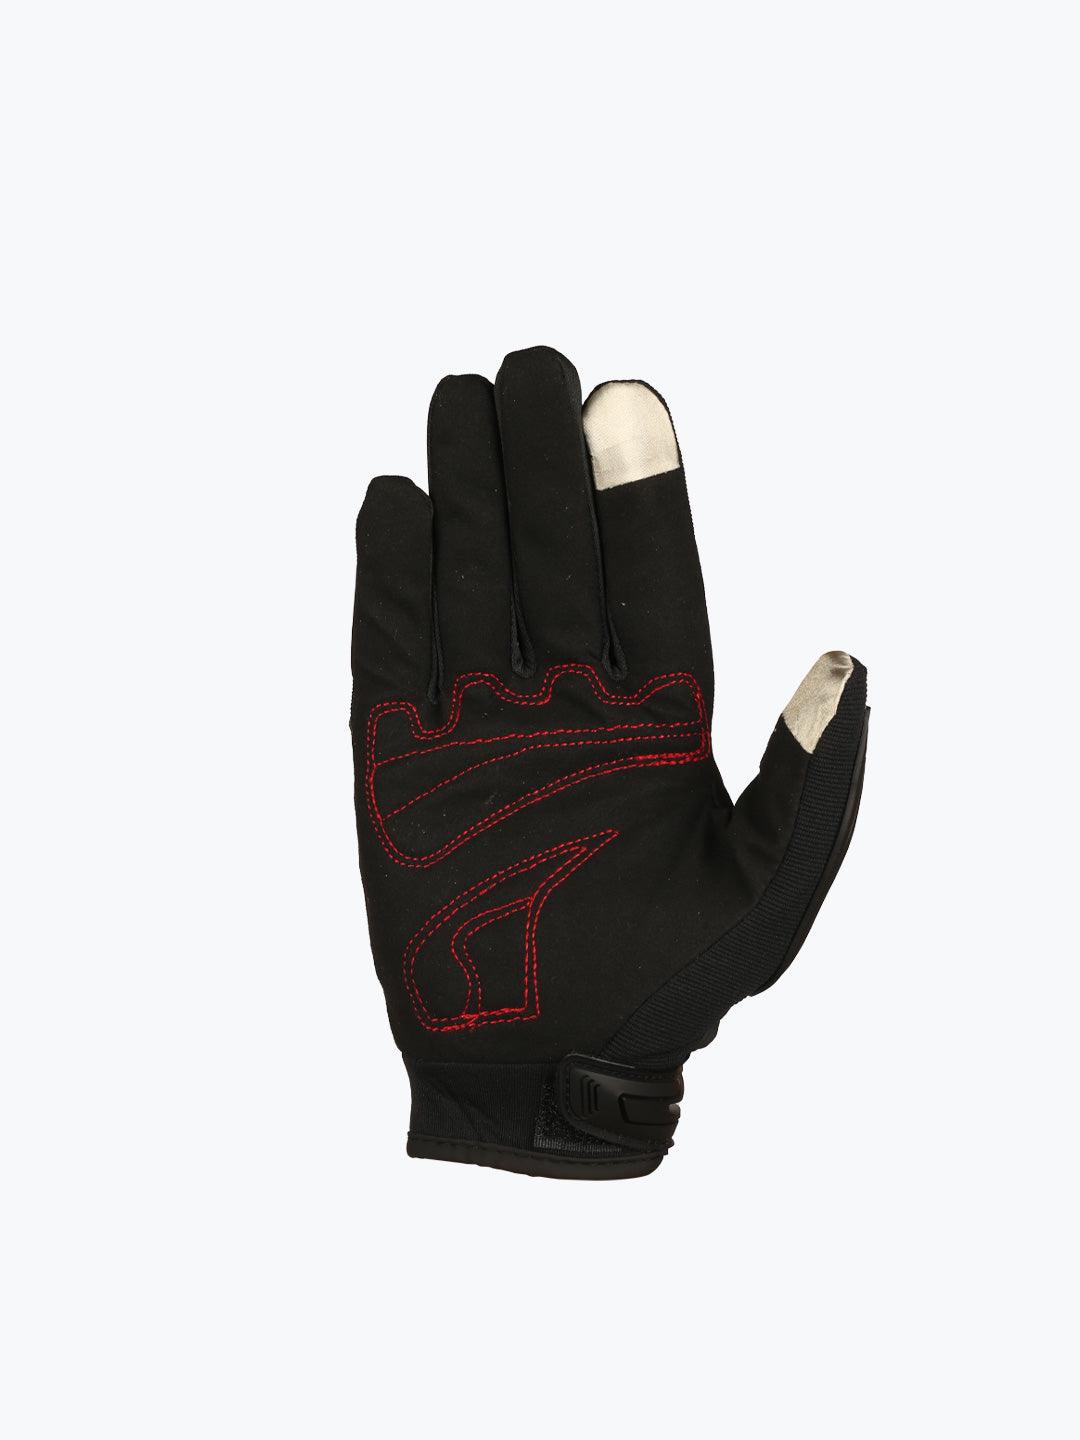 BSDDP Gloves A0135 Red - Moto Modz